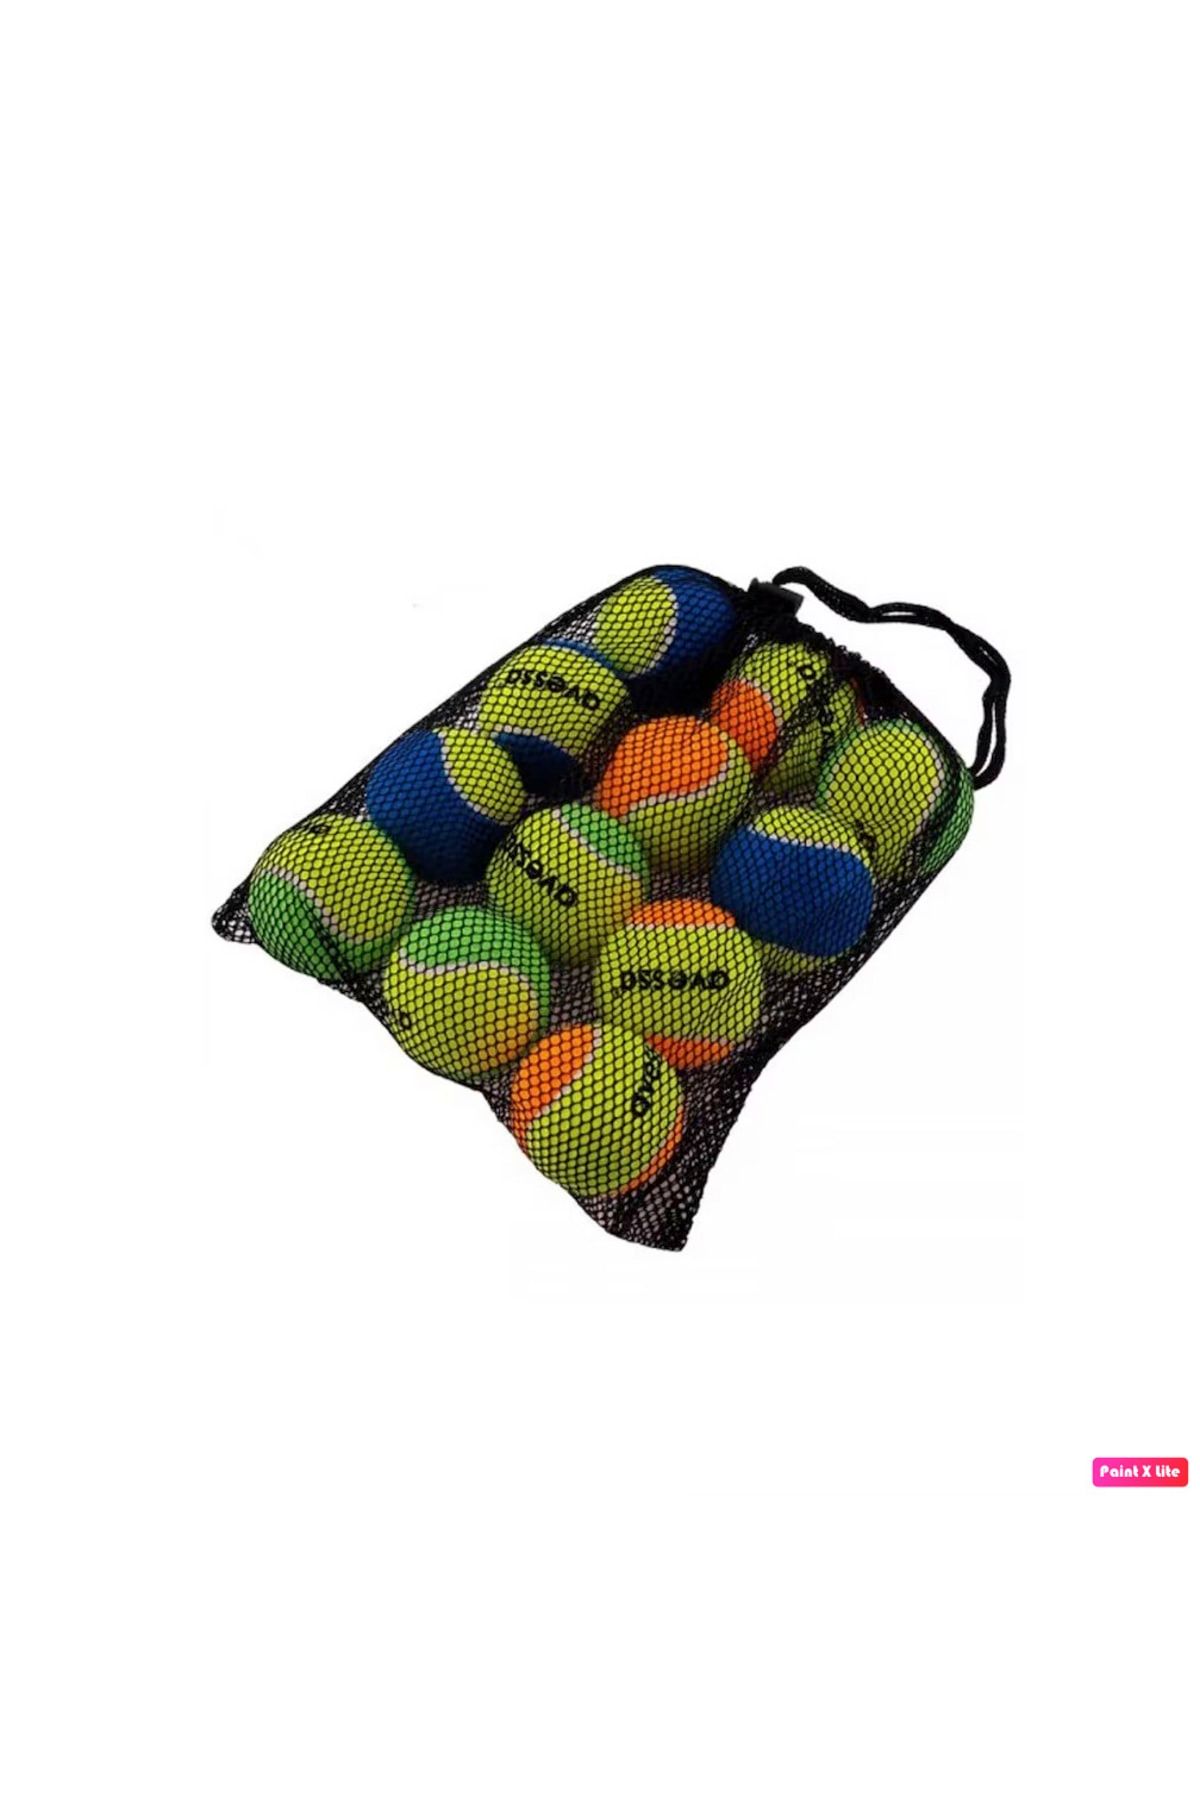 Avessa Tt-400 12 Adet Taşınabilir Filede Renkli Tenis Topu / Köpek Oyuncağı